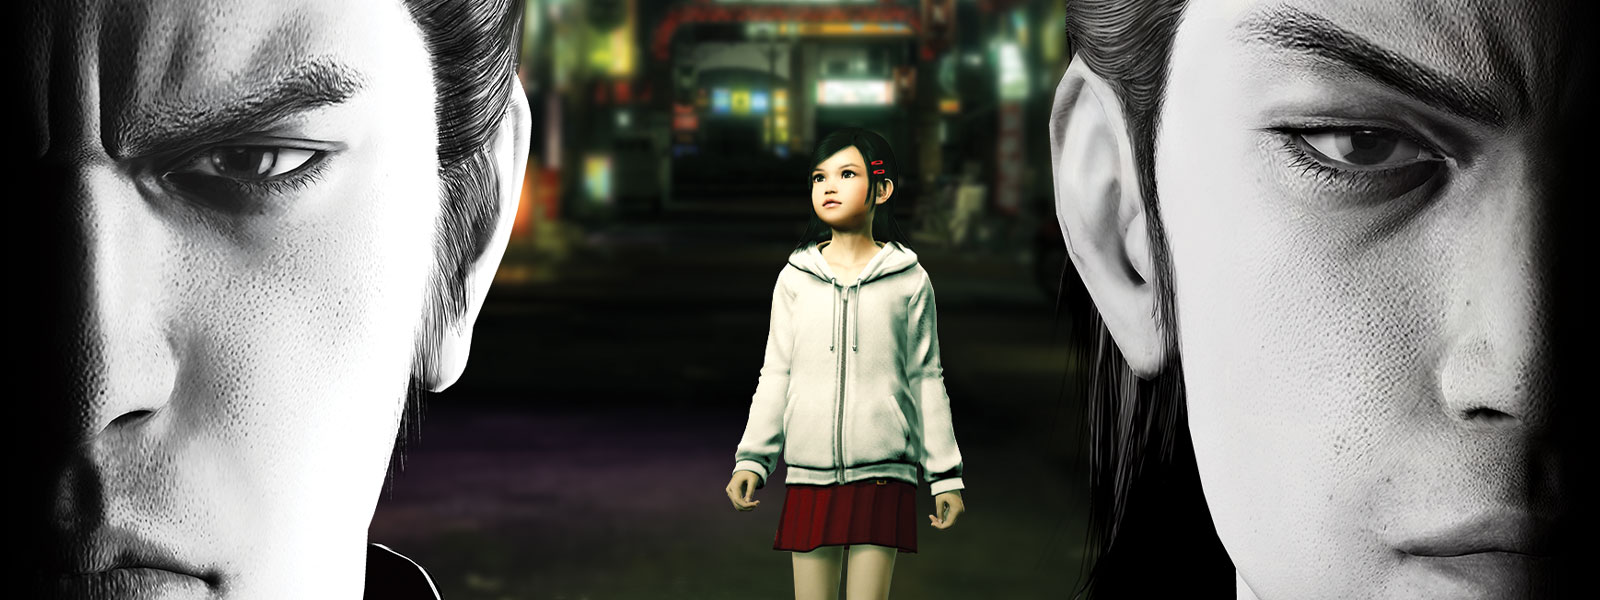 2 人の「Yakuza」のキャラクターが重々しく前を見据えている。その背景にある街に小さな女の子が佇んでいる。